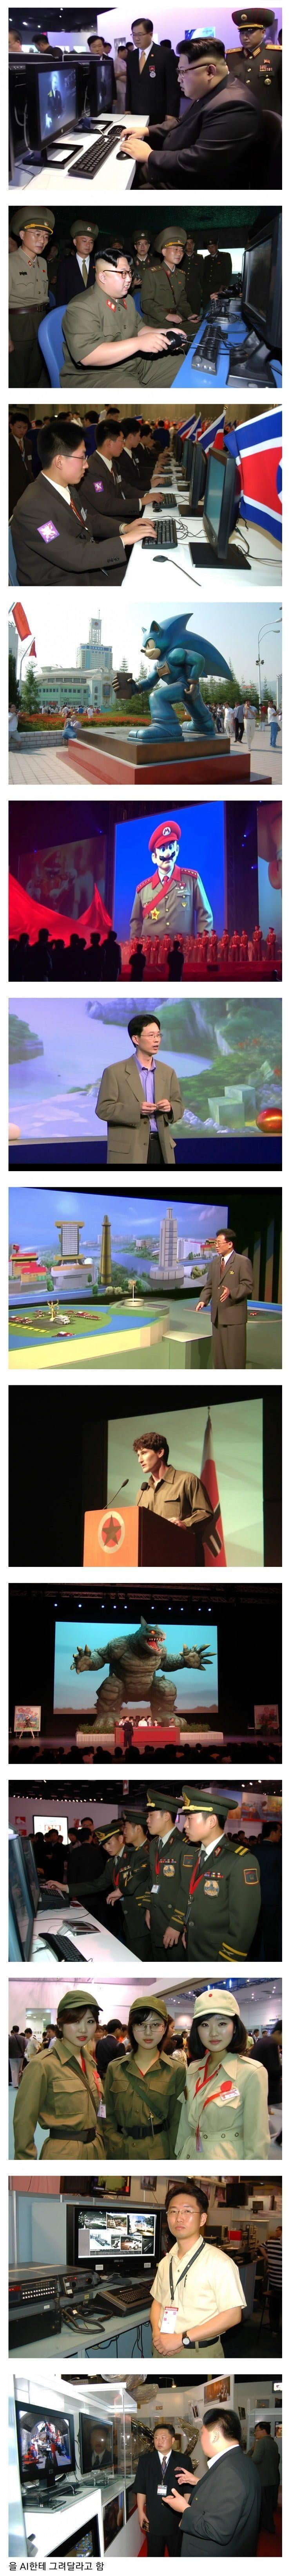 북한에서 열린 게임쇼 ㄷㄷ.JPG